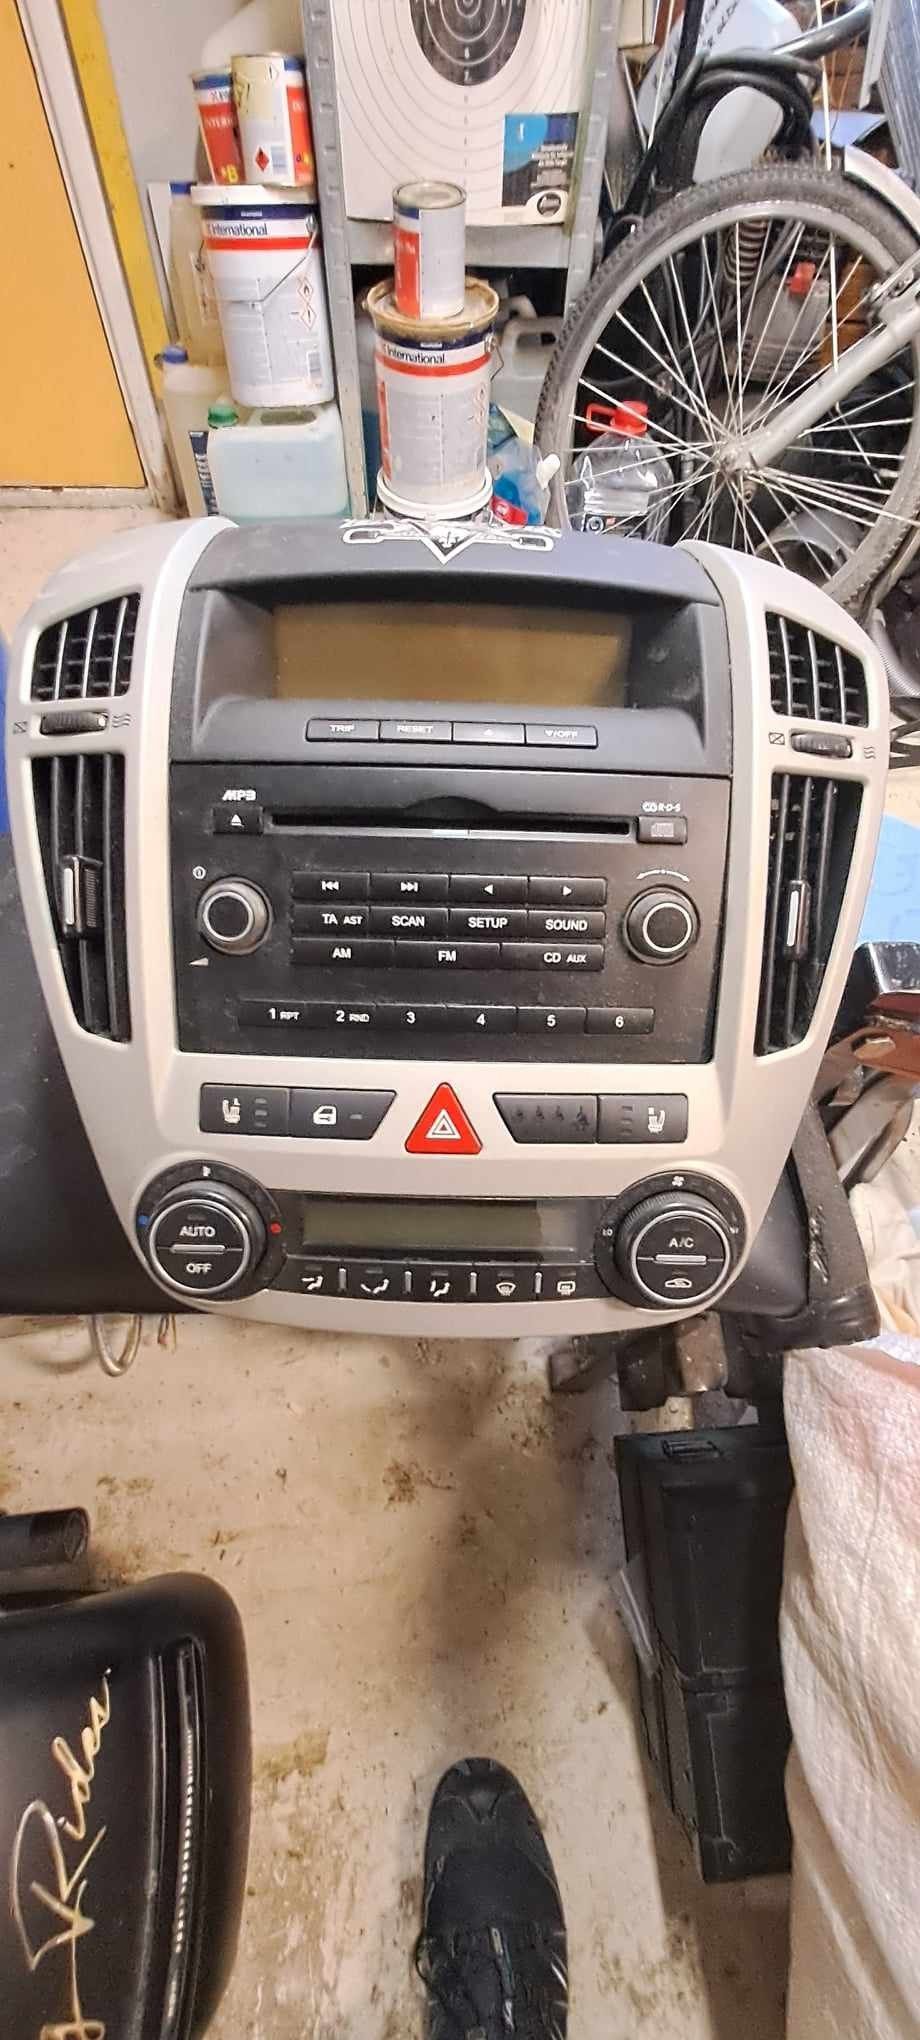 Kia Ceed radio